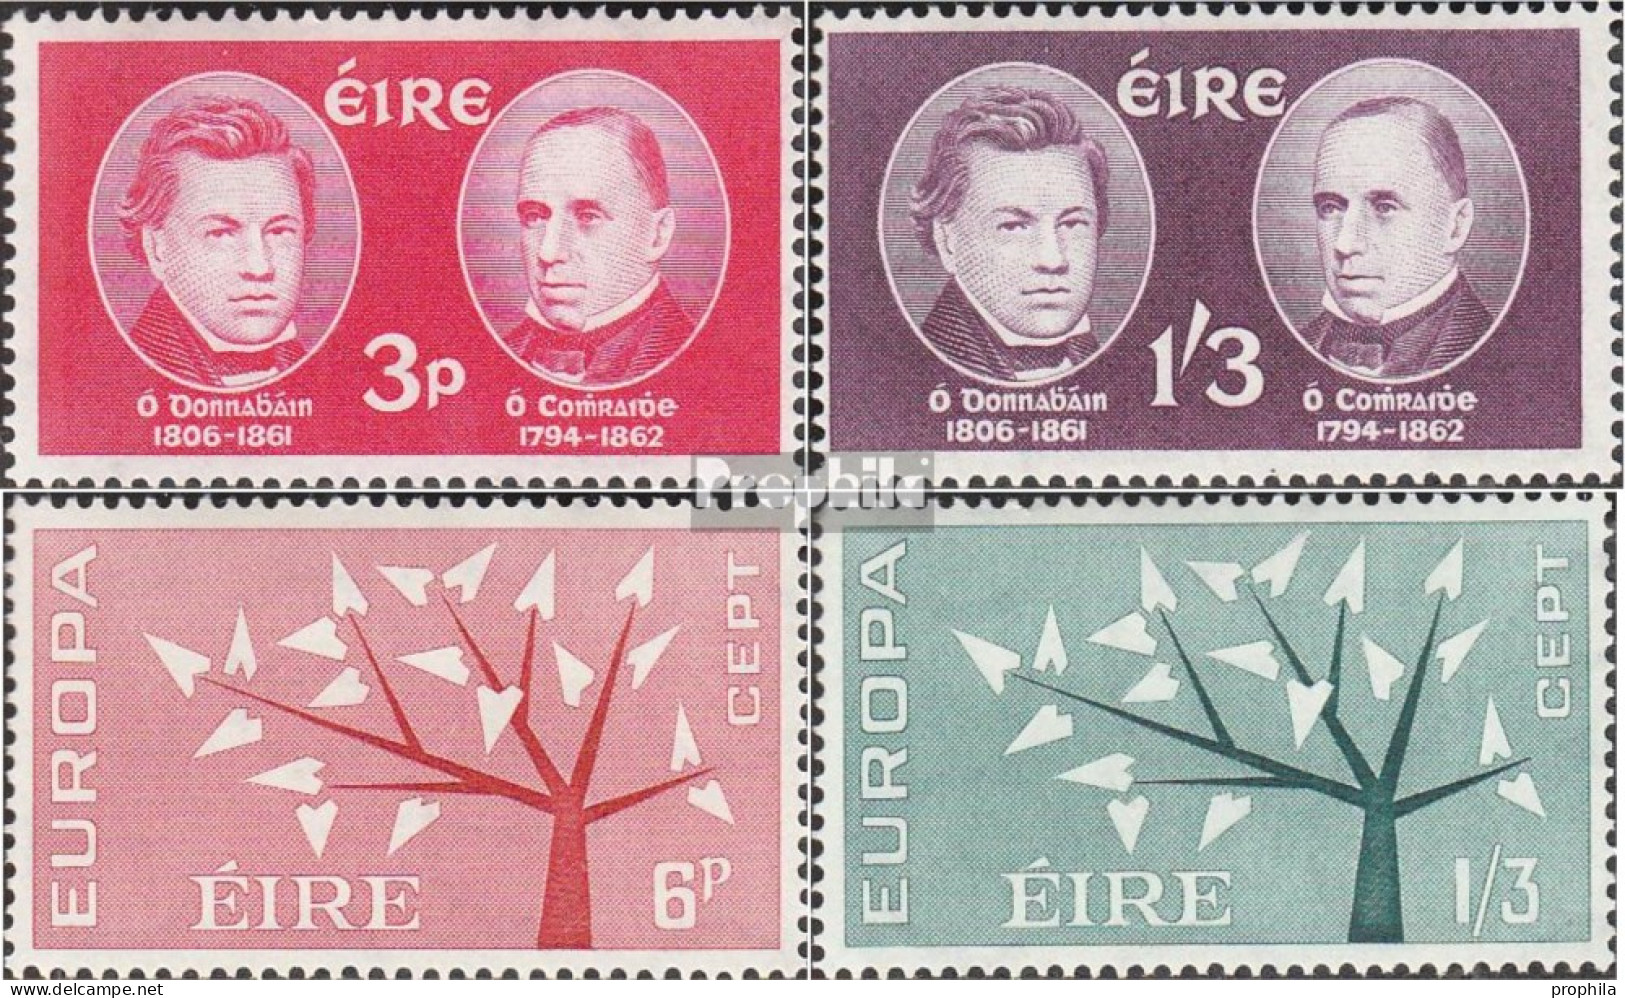 Irland Postfrisch Gelehrte 1962 Todestage, Europa - Neufs